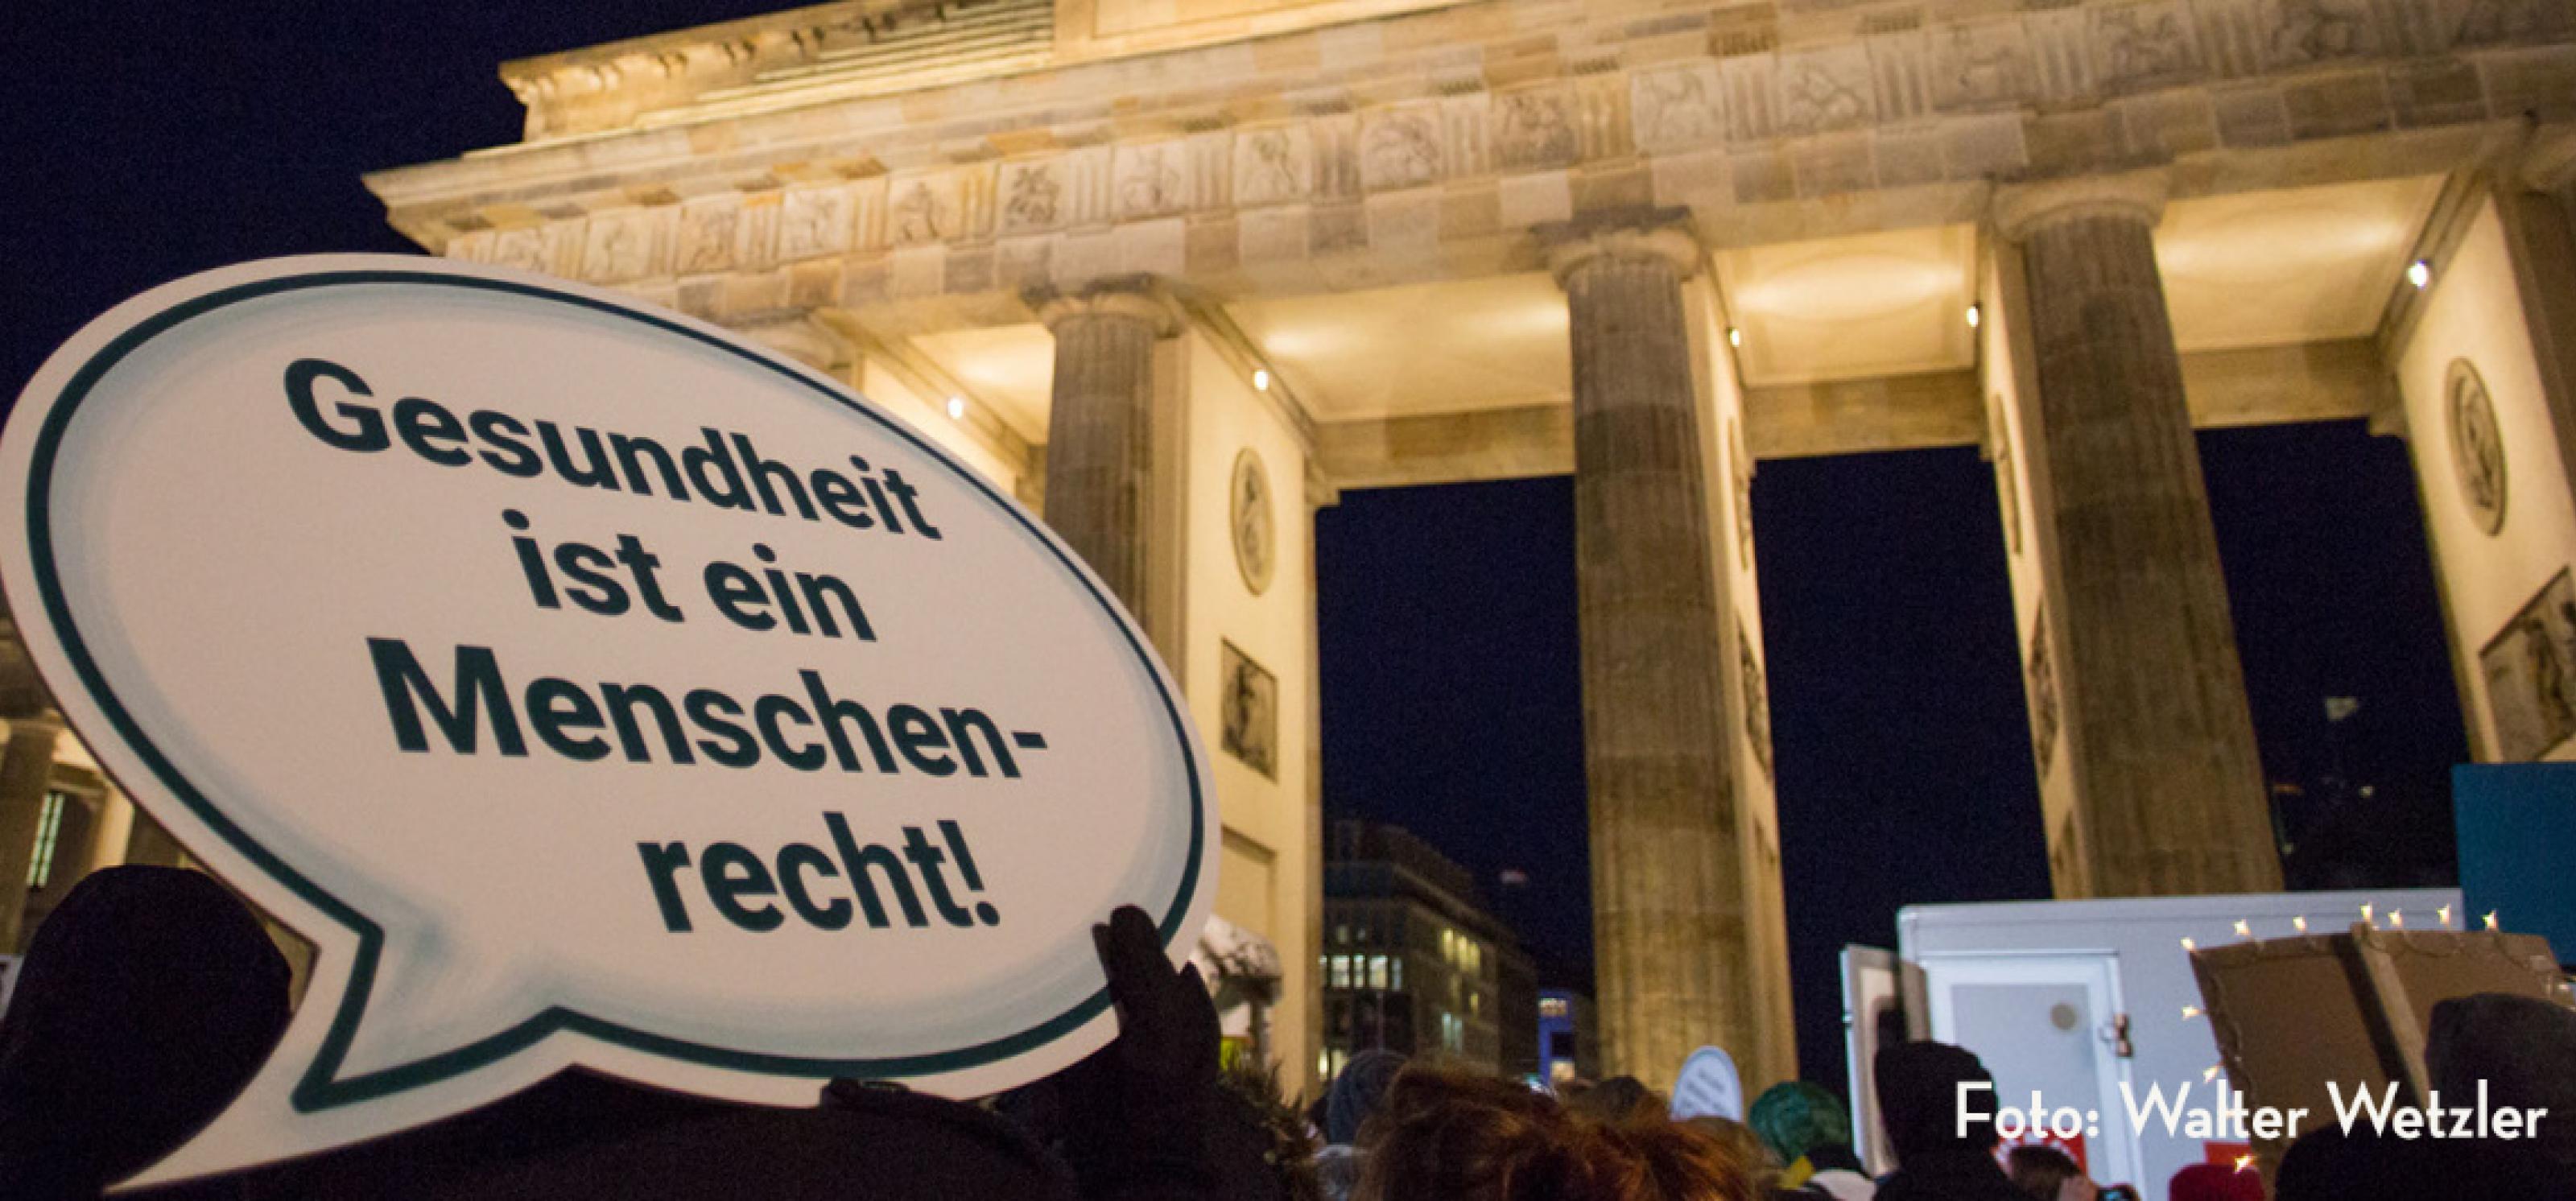 Eine Demonstration am Brandenburger Tor in Berlin, im Vordergrund ein Schild mit der Aufschrift "Gesundheit ist ein Menschenrecht"